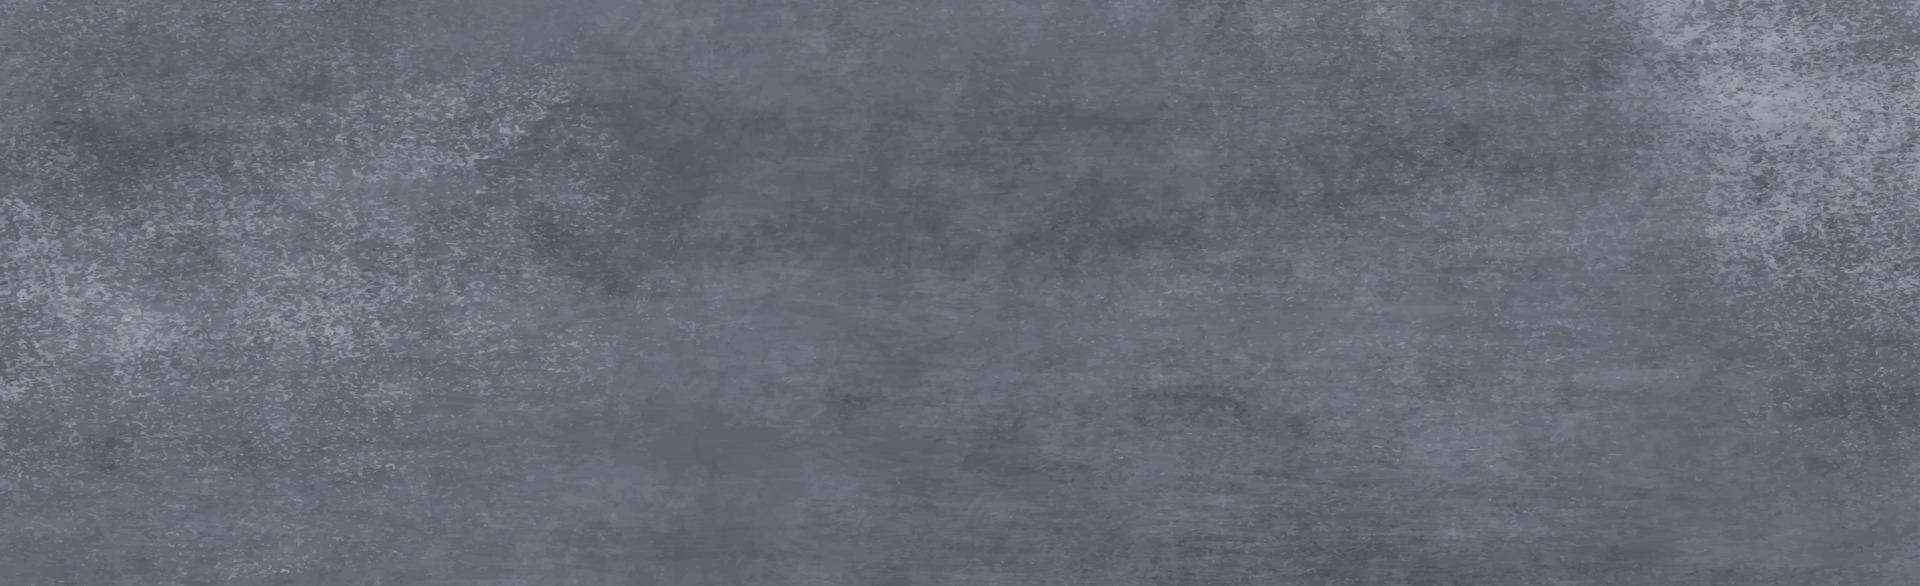 texture abstraite de mur gris, fond panoramique réaliste - vecteur